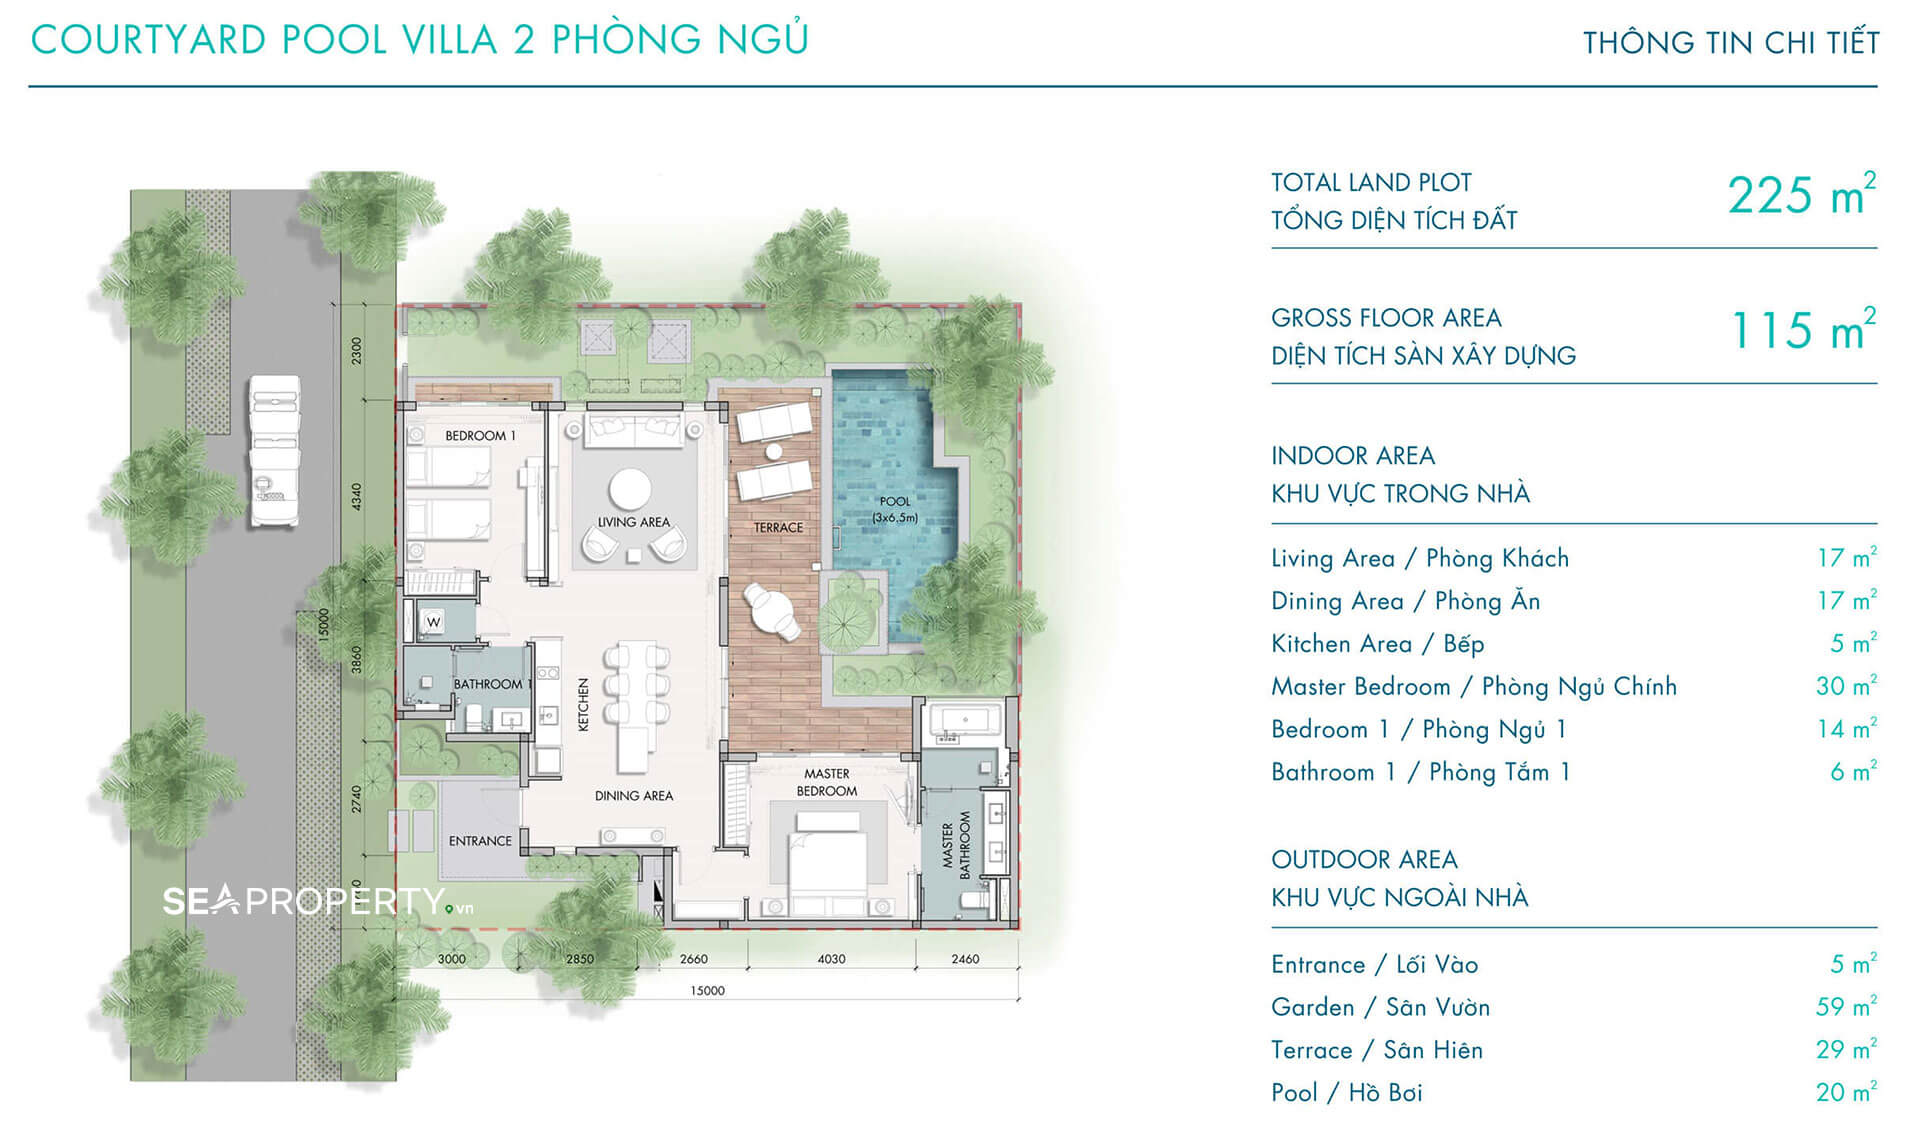 Biệt thư The Ocean Villas Quy Nhơn Courtyard pool villa - 2 bedrooms